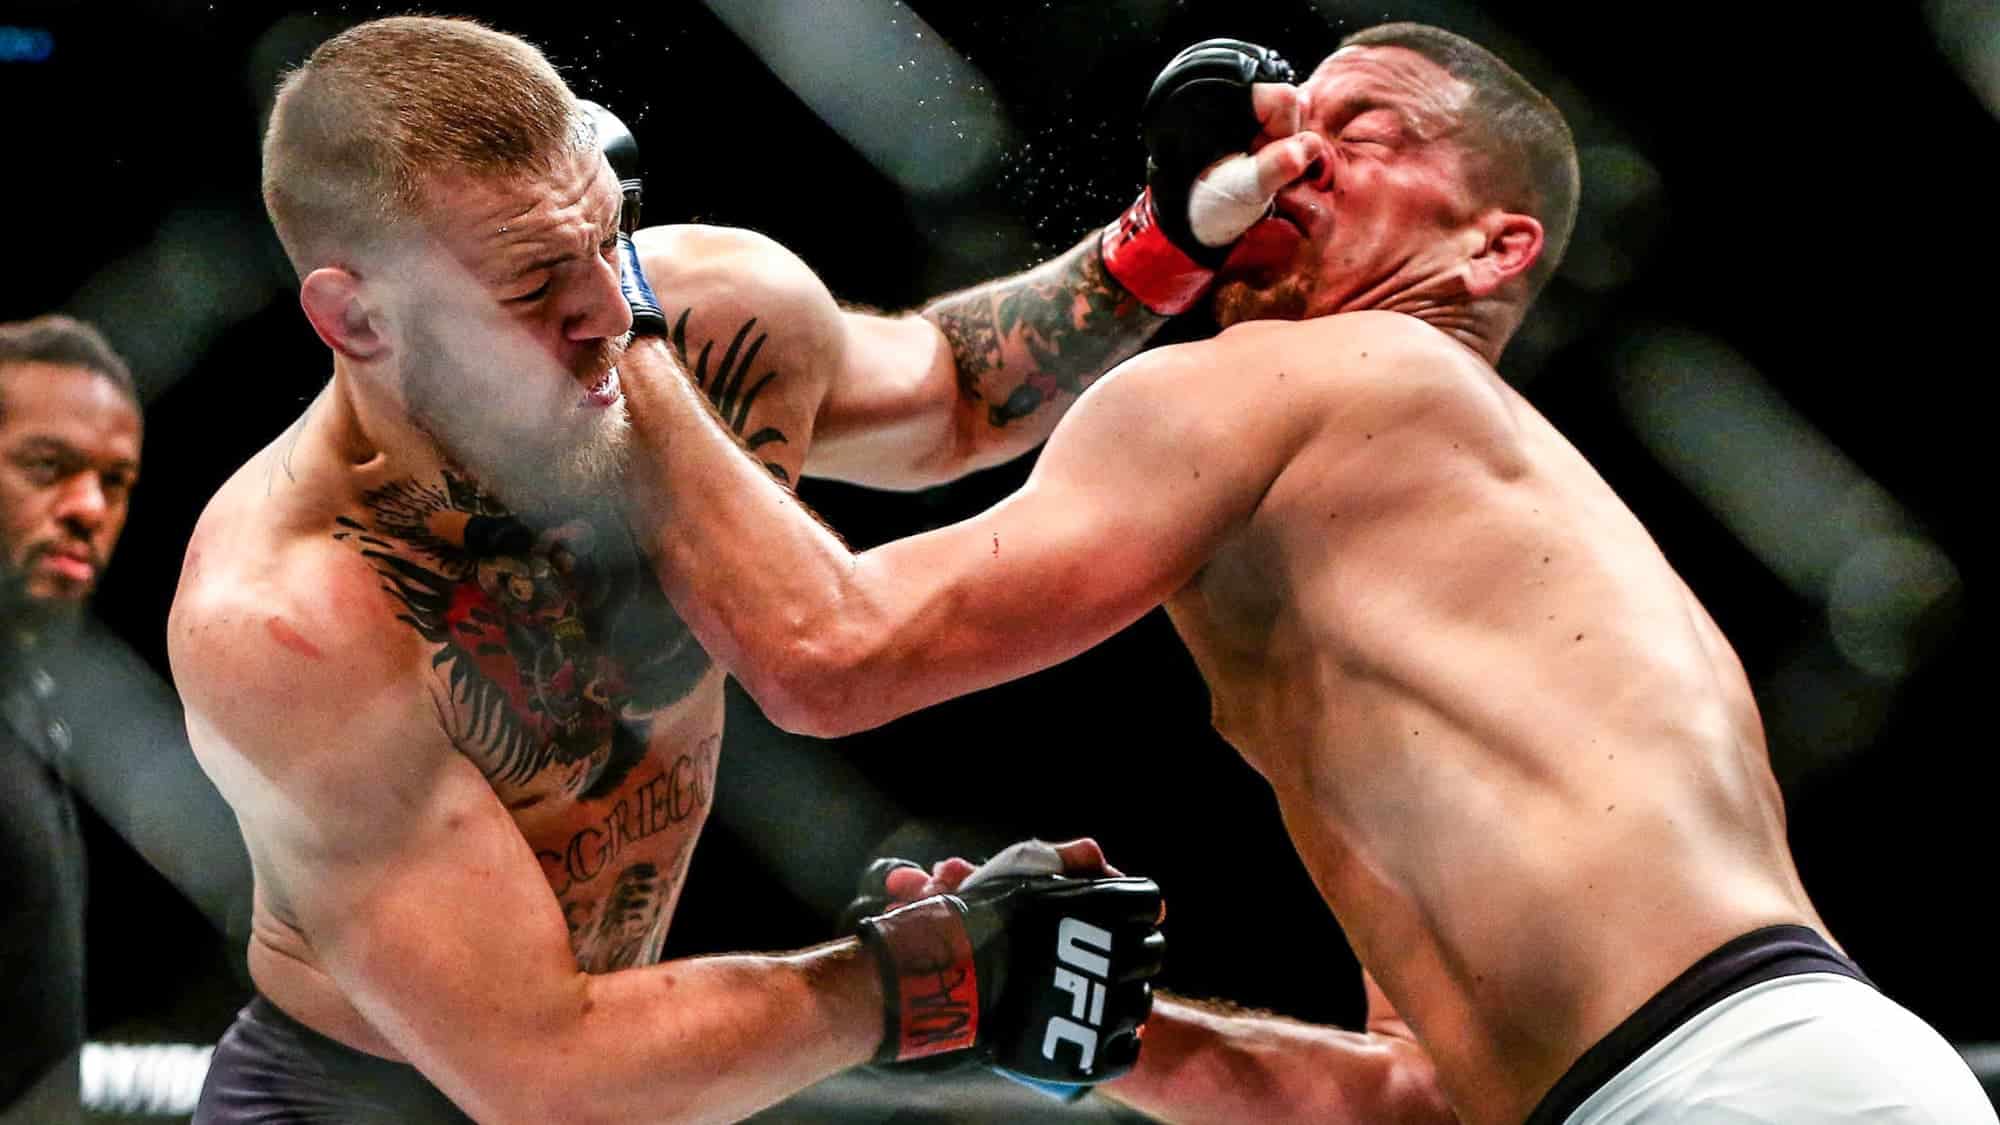 MMA : Un mandat d’arrêt de la police américaine contre une star de l’UFC, bourreau de McGregor